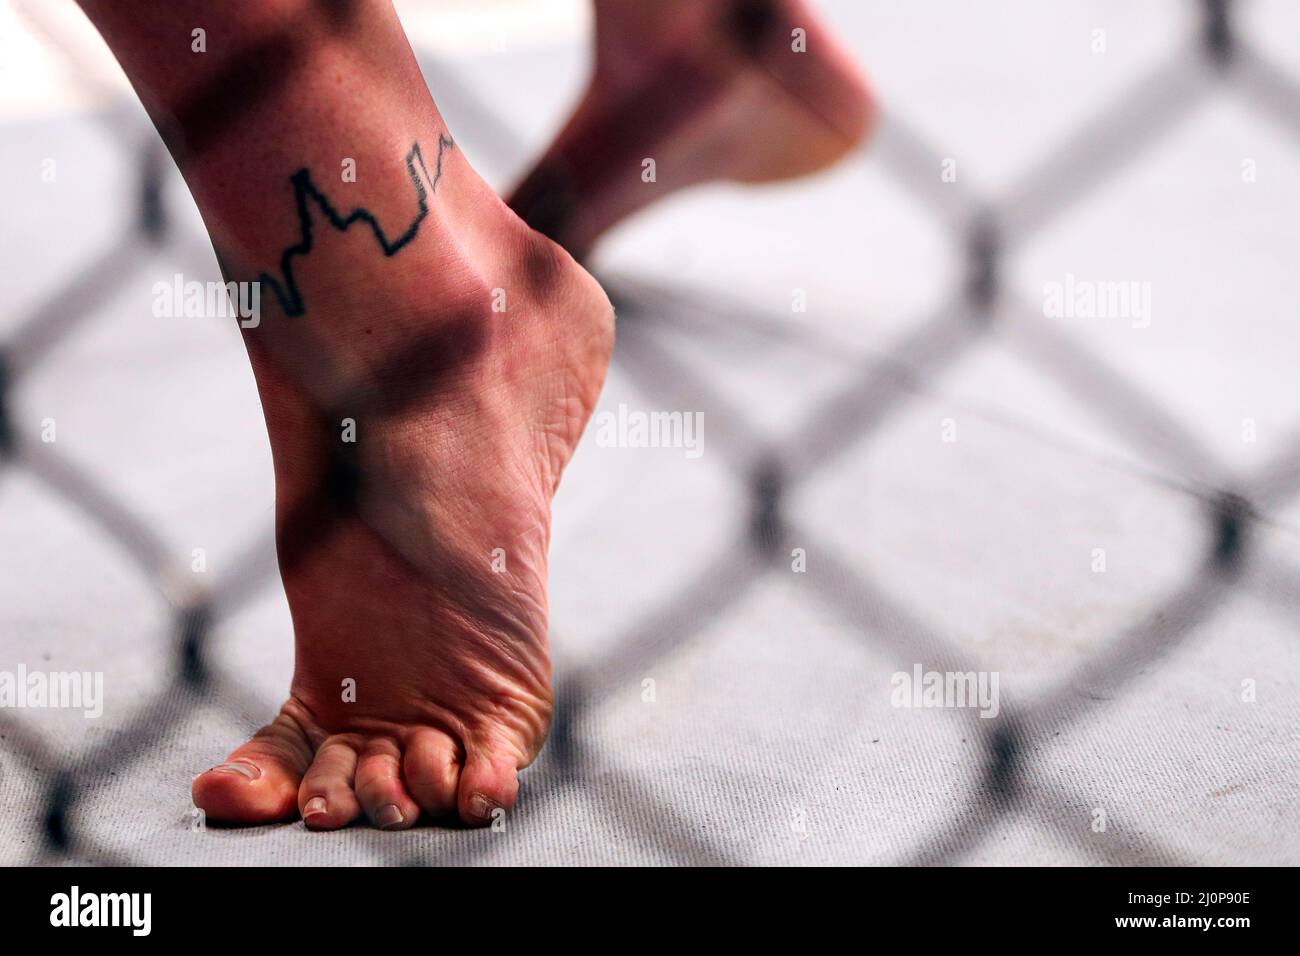 Molly McCannÕs tatouage de l'horizon de Liverpool sur sa cheville lors de son combat de poids de Flyweight féminin contre Luana Carolina au O2, Londres. Date de la photo: Samedi 19 mars 2022. Banque D'Images